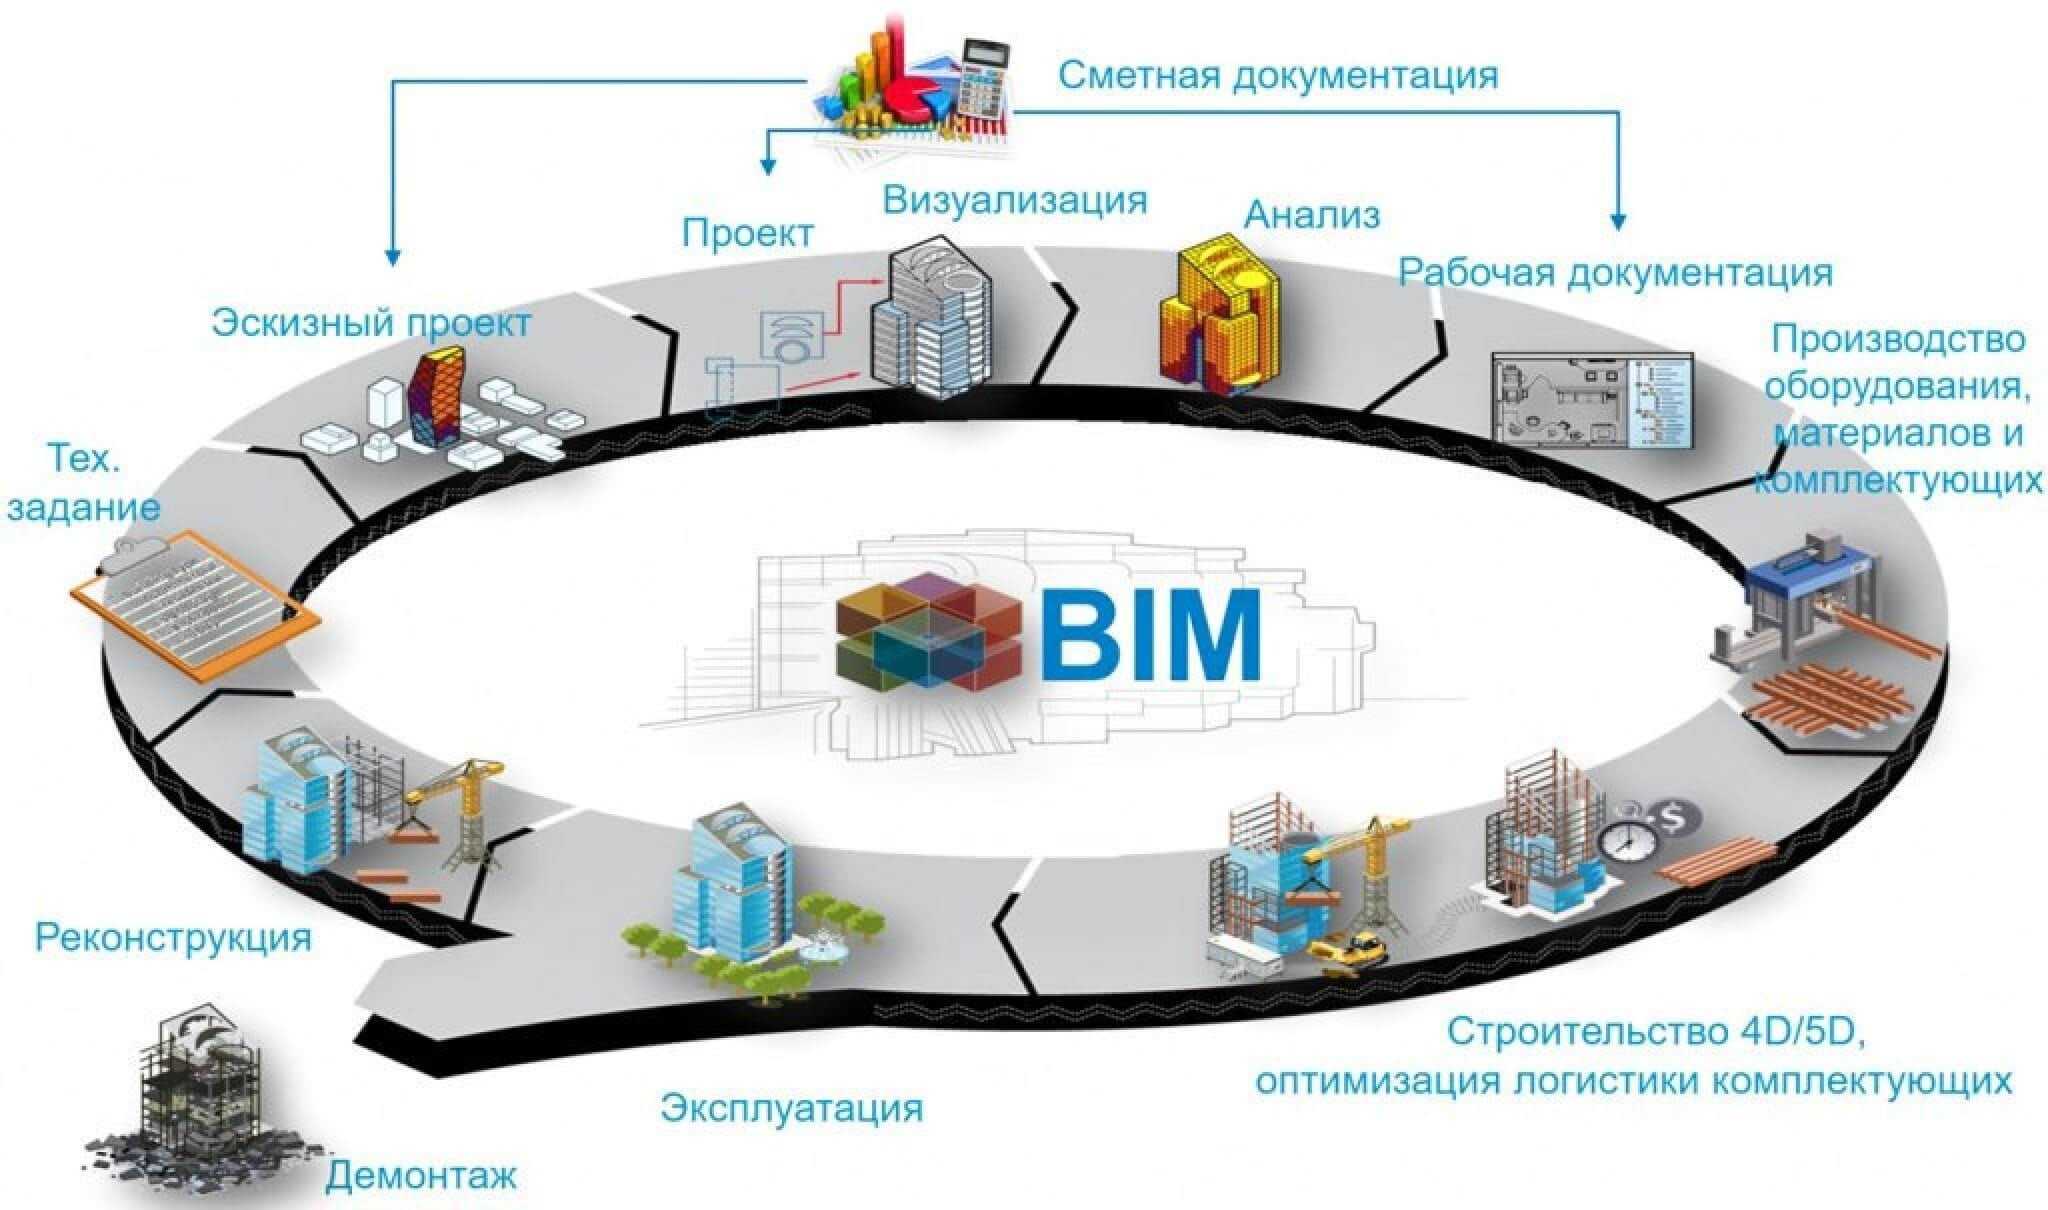 Организация открытых торгов. Жизненный цикл BIM модели. Жизненный цикл здания BIM. Технологии информационного моделирования BIM. BIM-технологии в управлении строительными проектами.